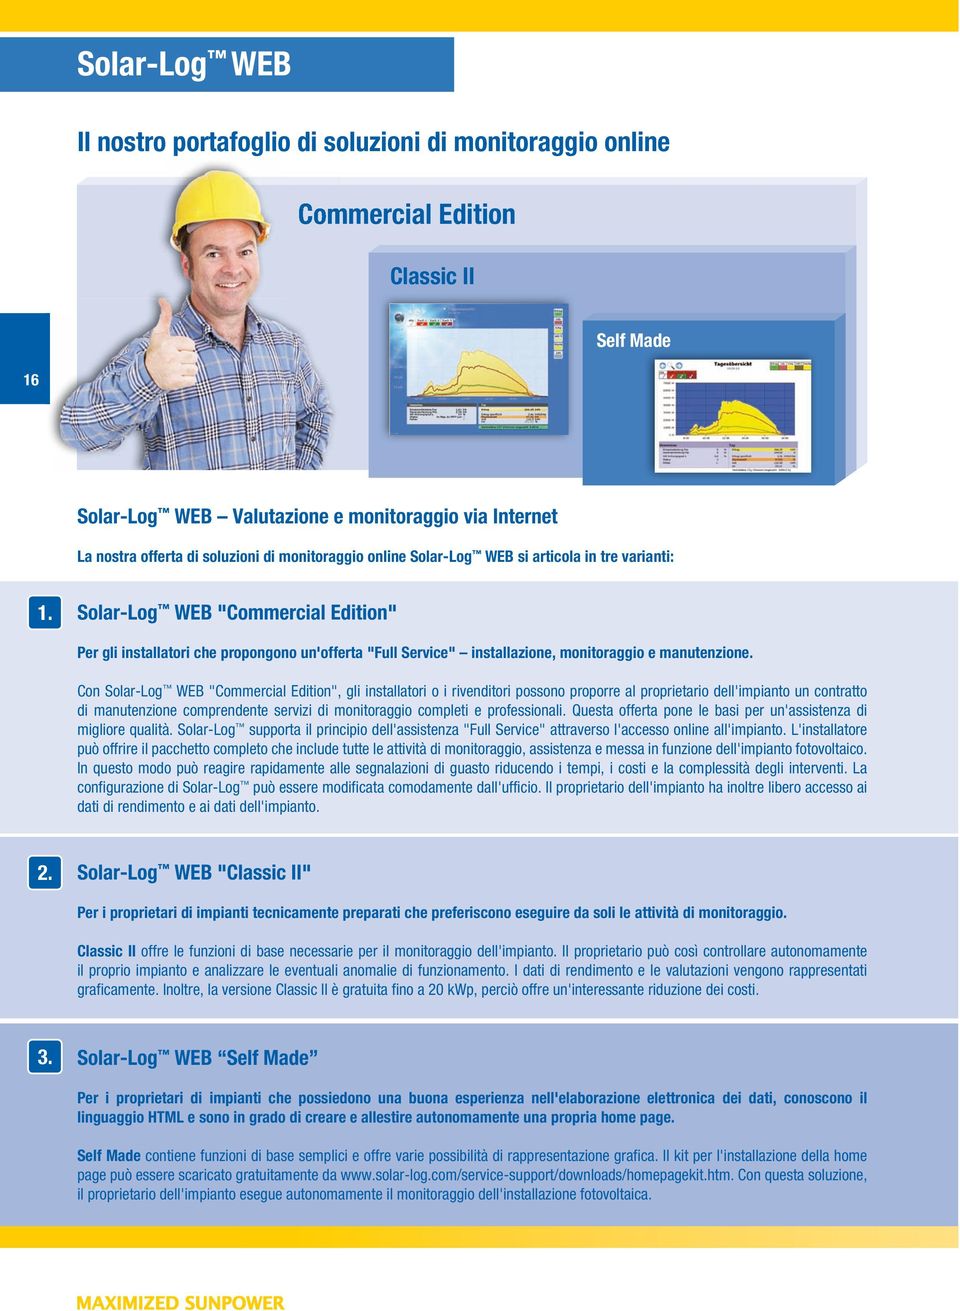 Solar-Log WEB "Commercial Edition" Per gli installatori che propongono un'offerta "Full Service" installazione, monitoraggio e manutenzione.